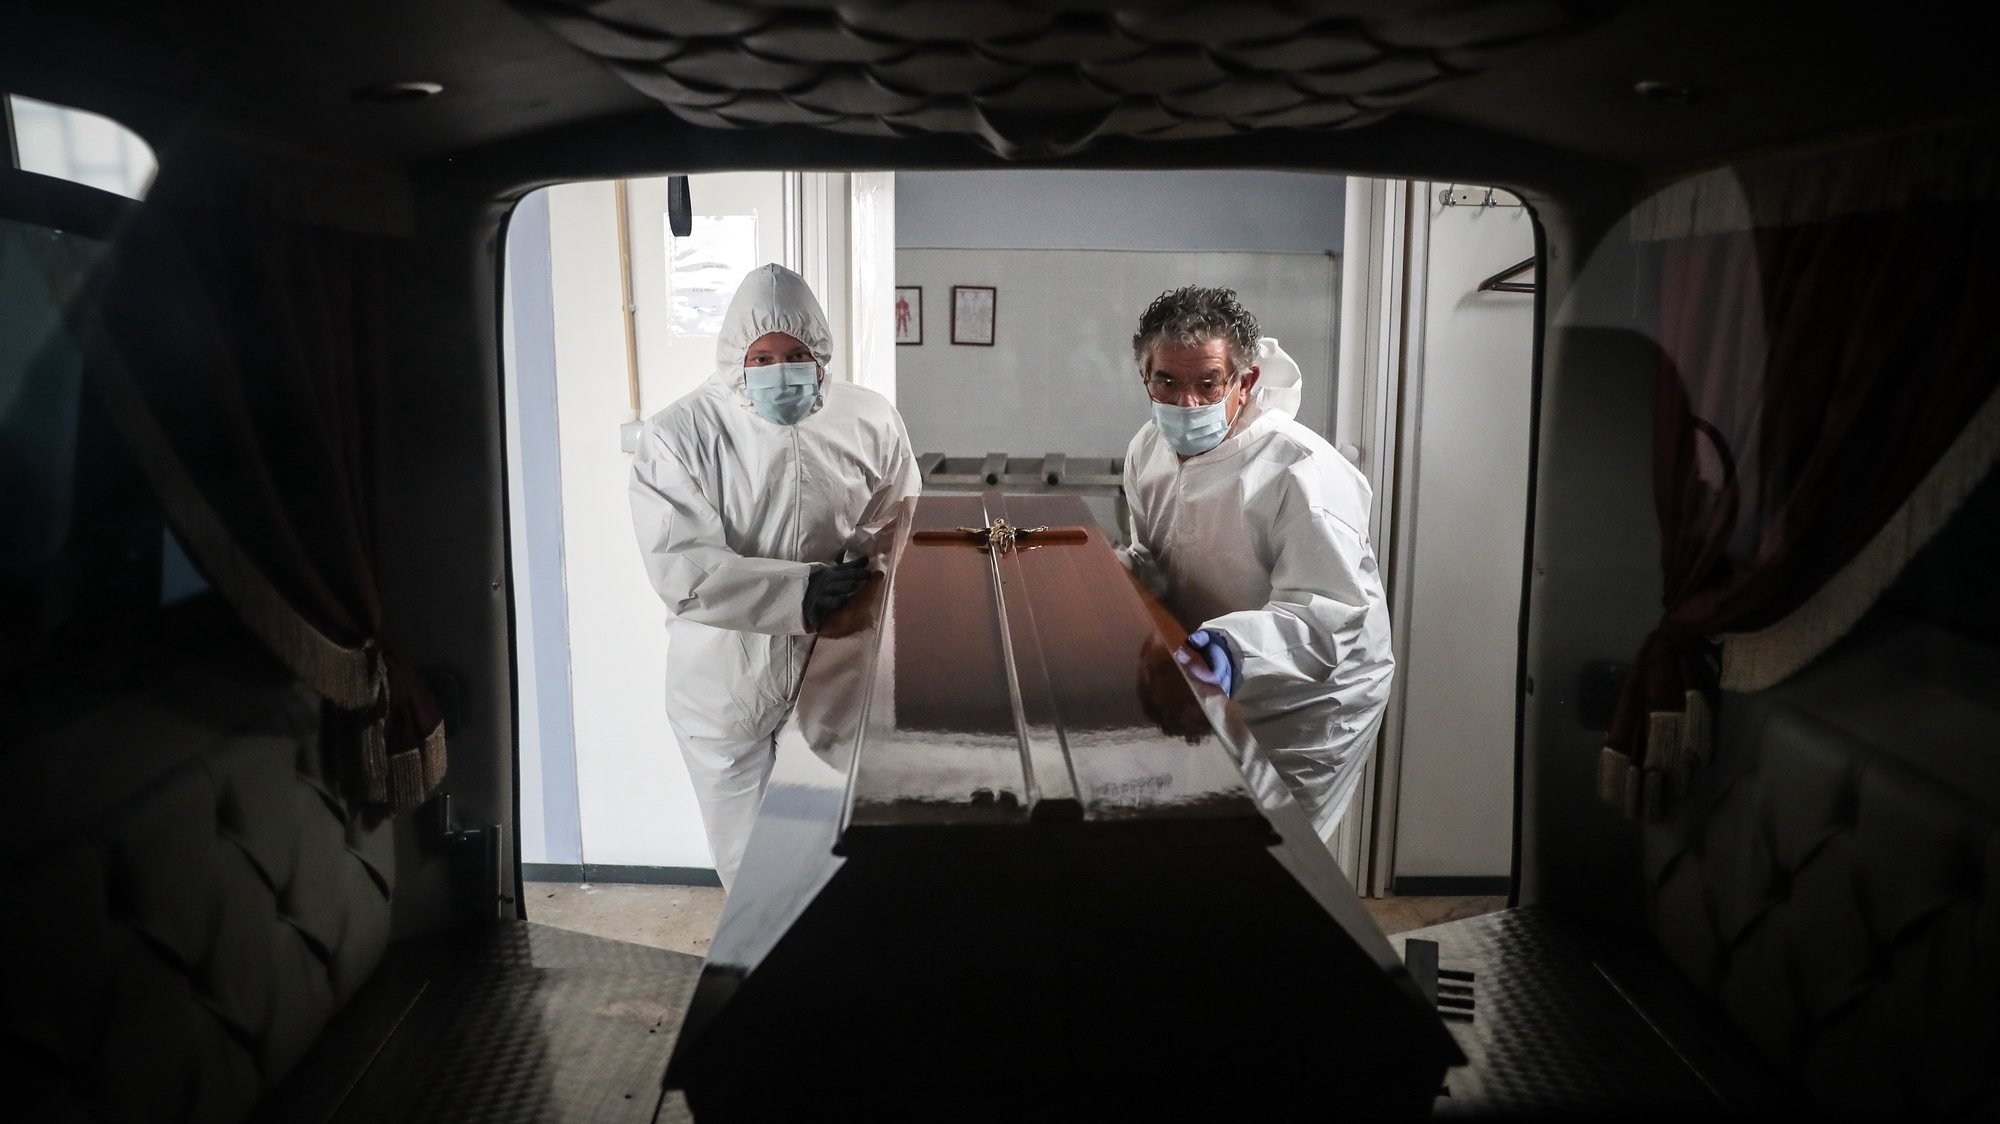 (11/23) Funcionários de uma agência funerária colocam um caixão de uma mulher que morreu vítima de covid-19 no interior de uma carrinha funerária, na Amadora, 30 de janeiro de 2021. Esta semana Portugal ultrapassou as 300 mortes diárias por covid-19, um novo máximo desde o início da pandemia. (ACOMPANHA TEXTO DA LUSA DO DIA 30 DE JANEIRO DE 2021). MÁRIO CRUZ/LUSA